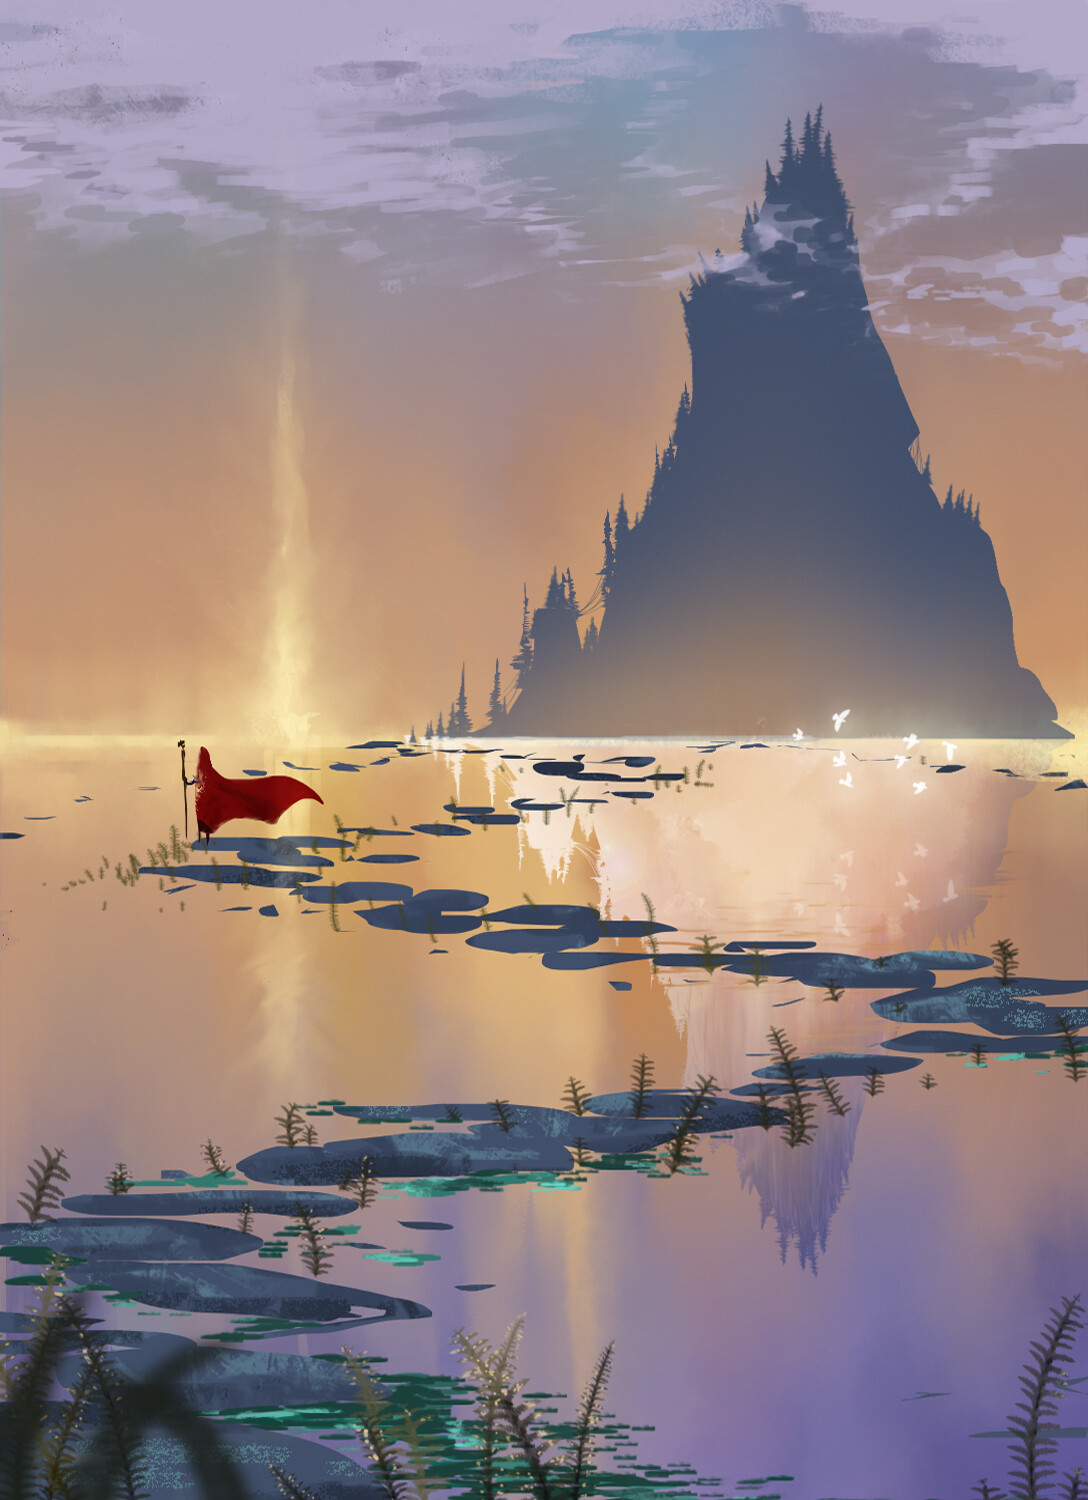 fantasy art landscapes water